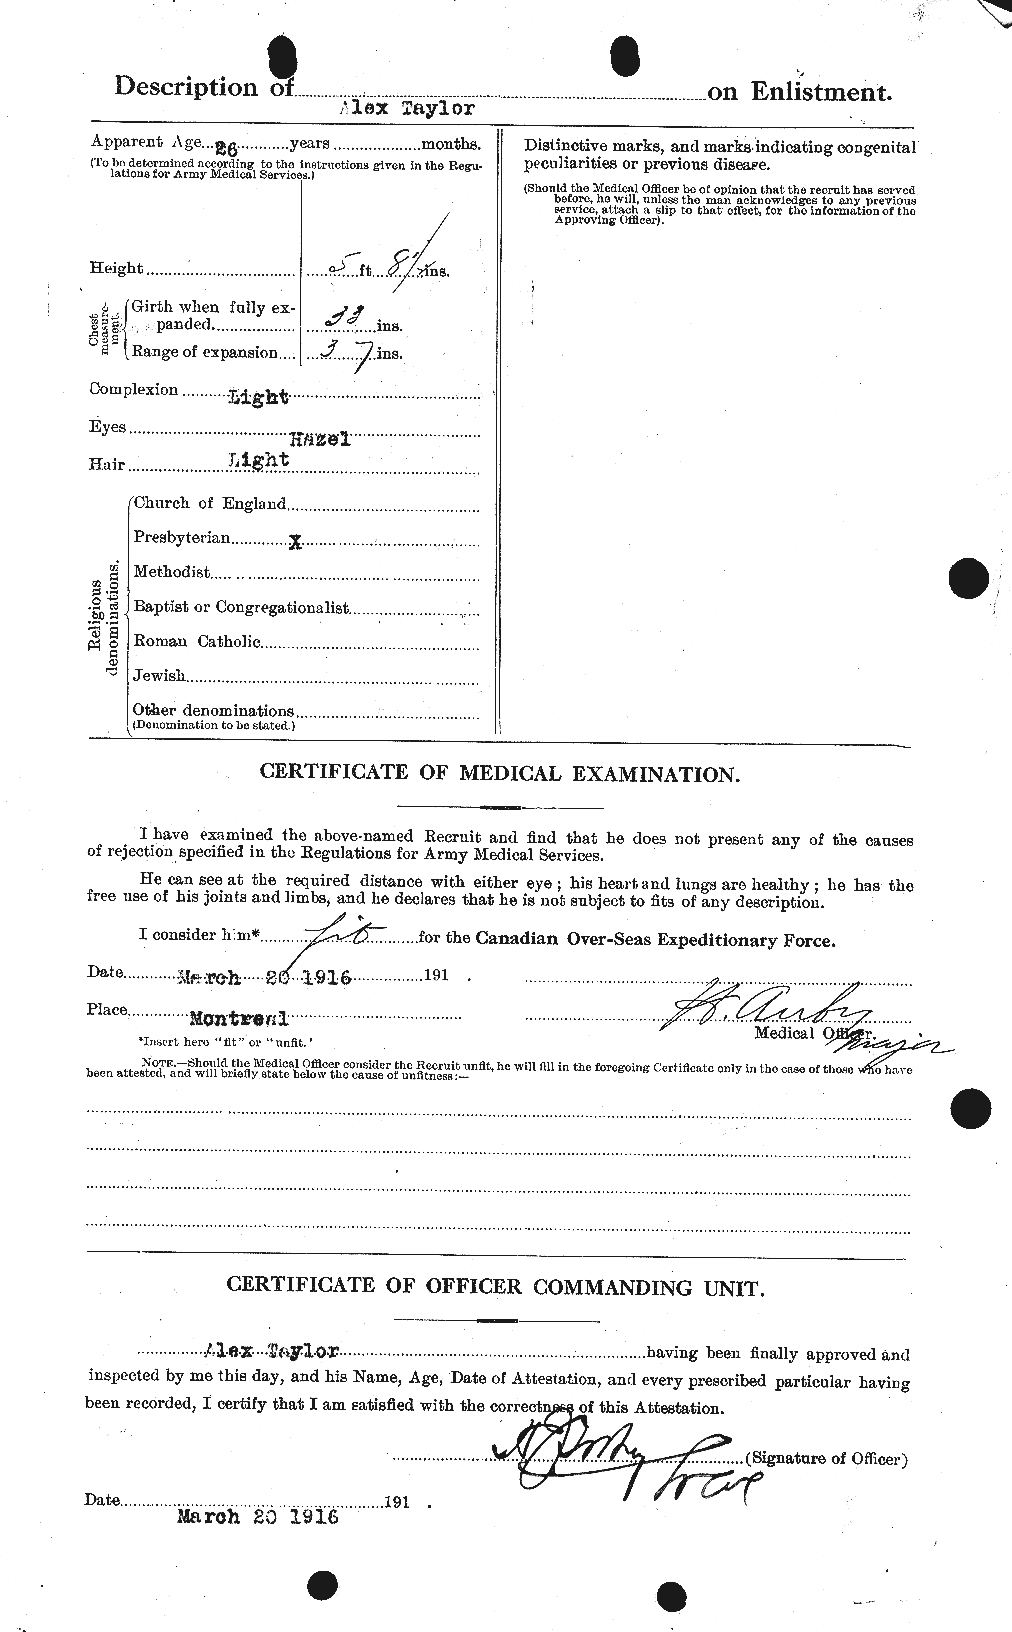 Dossiers du Personnel de la Première Guerre mondiale - CEC 626131b